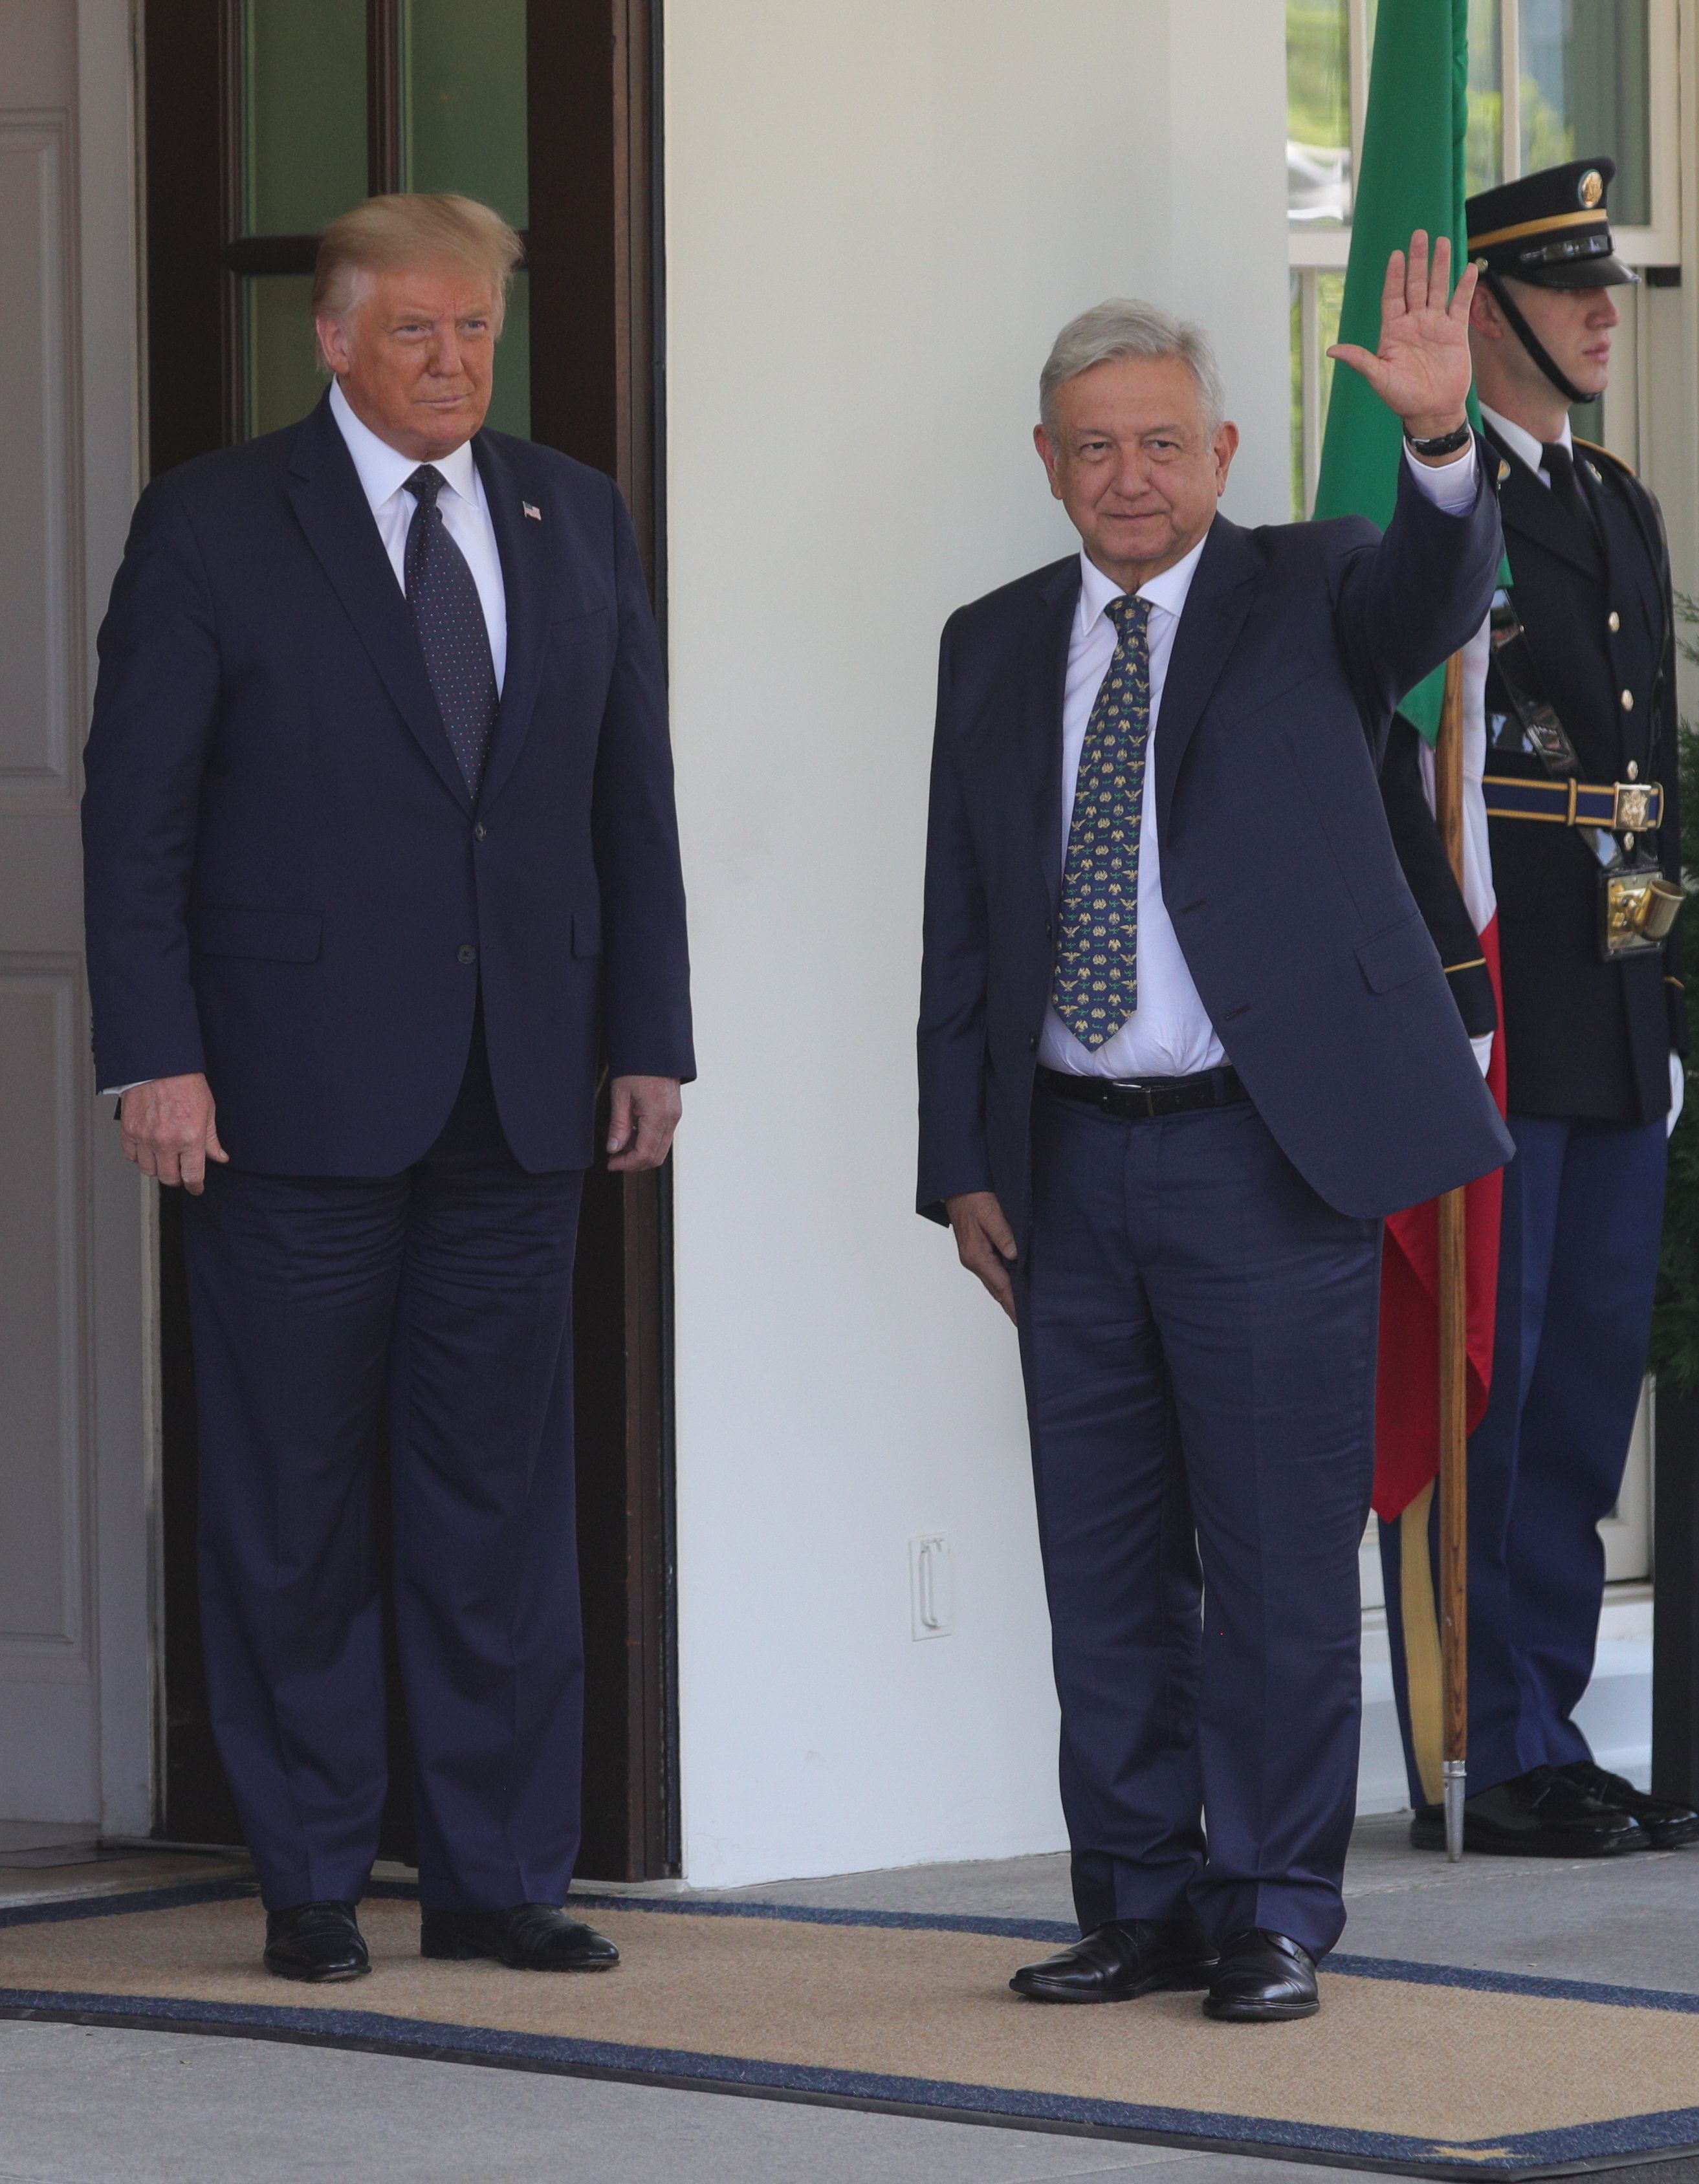 El presidente de los Estados Unidos, Donald Trump, da la bienvenida al presidente de México, Andrés Manuel López Obrador, en la Casa Blanca en Washington, EE. UU., 8 de julio de 2020. (Foto: REUTERS / Tom Brenner)